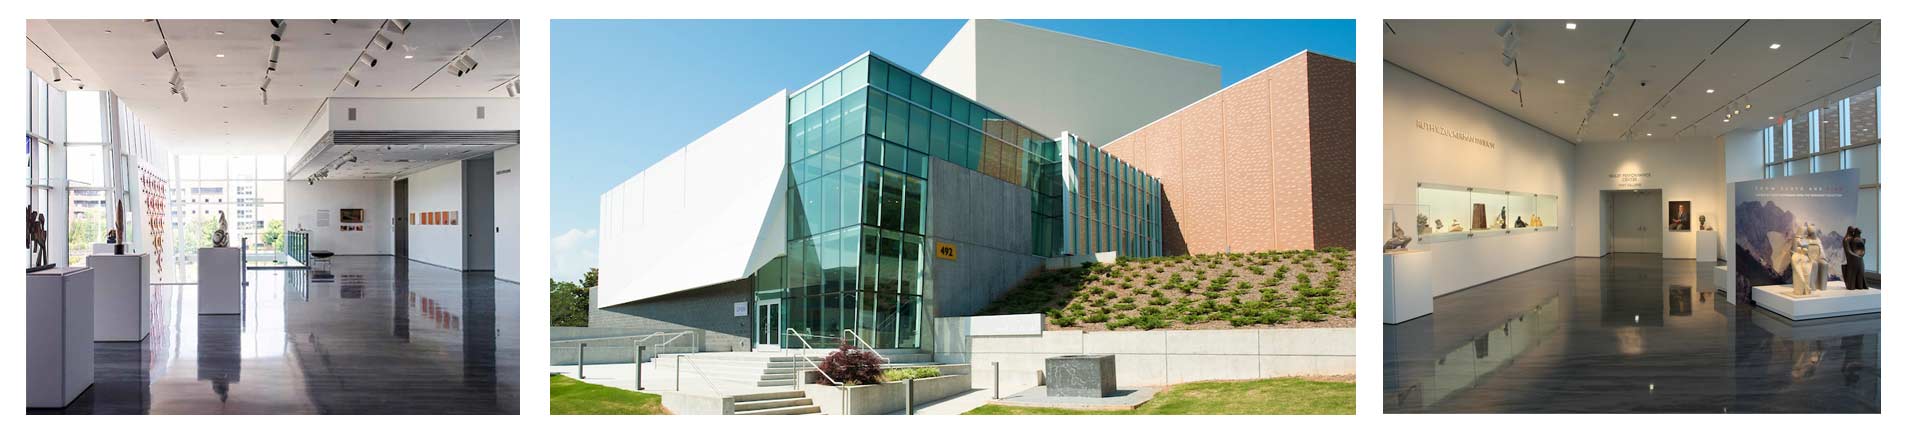 KSU Events and Venue Management Zuckerman Museum Header